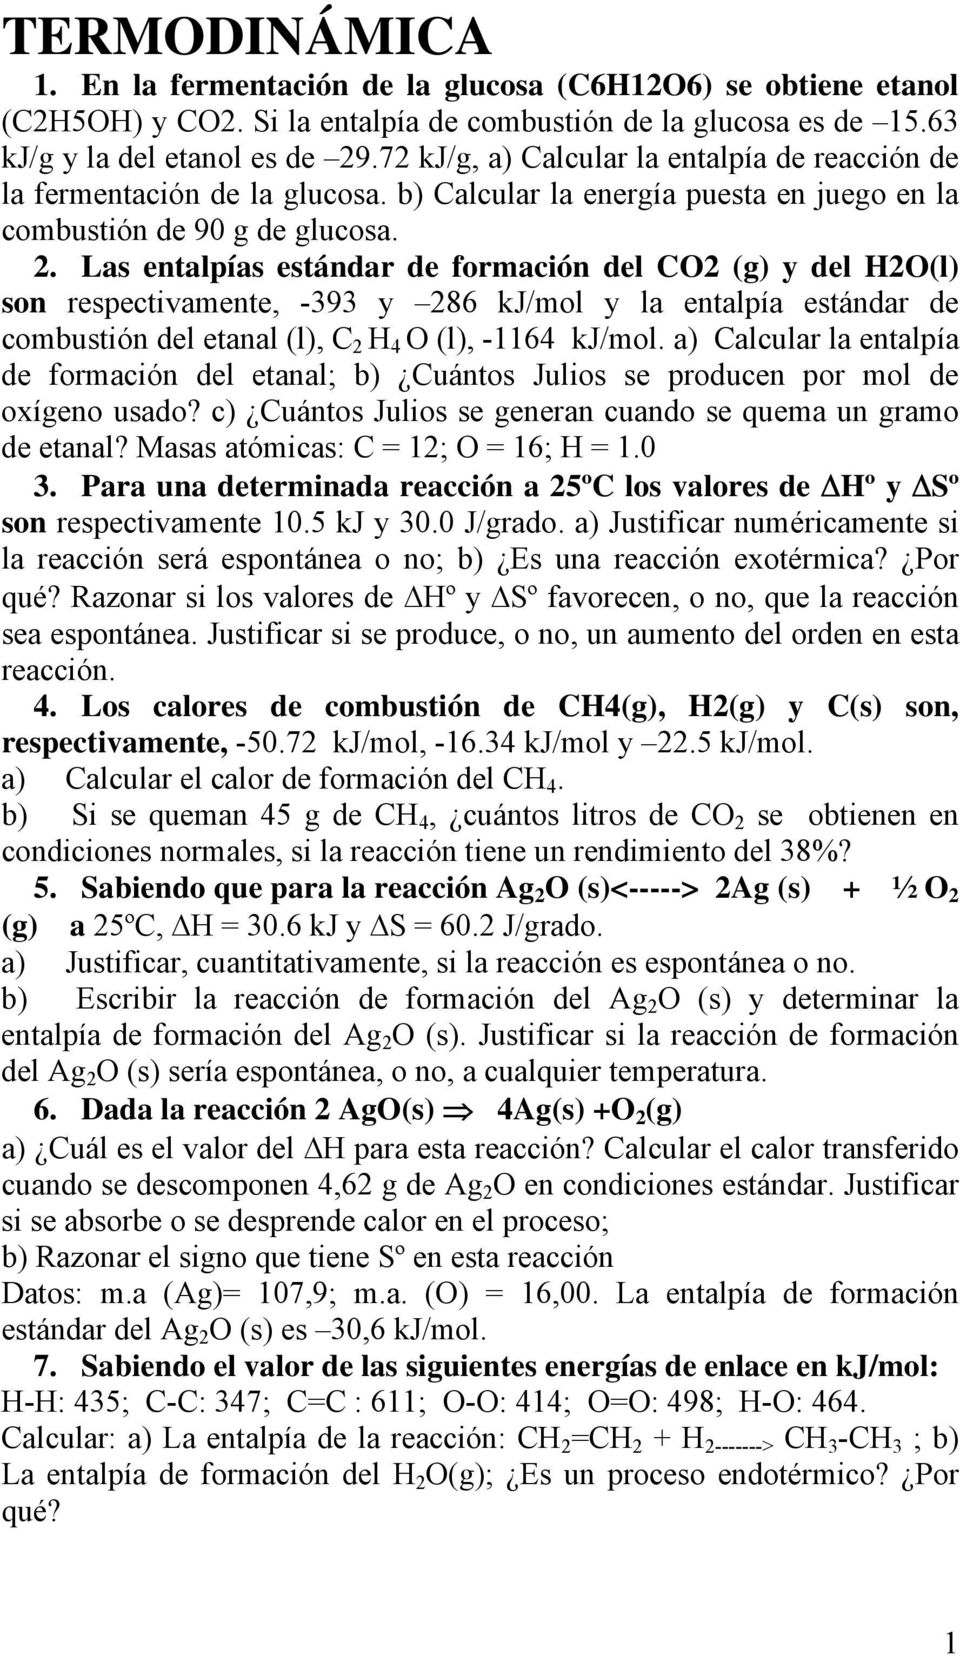 Las entalpías estándar de formación del CO2 (g) y del H2O(l) son respectivamente, -393 y 286 kj/mol y la entalpía estándar de combustión del etanal (l), C 2 H 4 O (l), -1164 kj/mol.